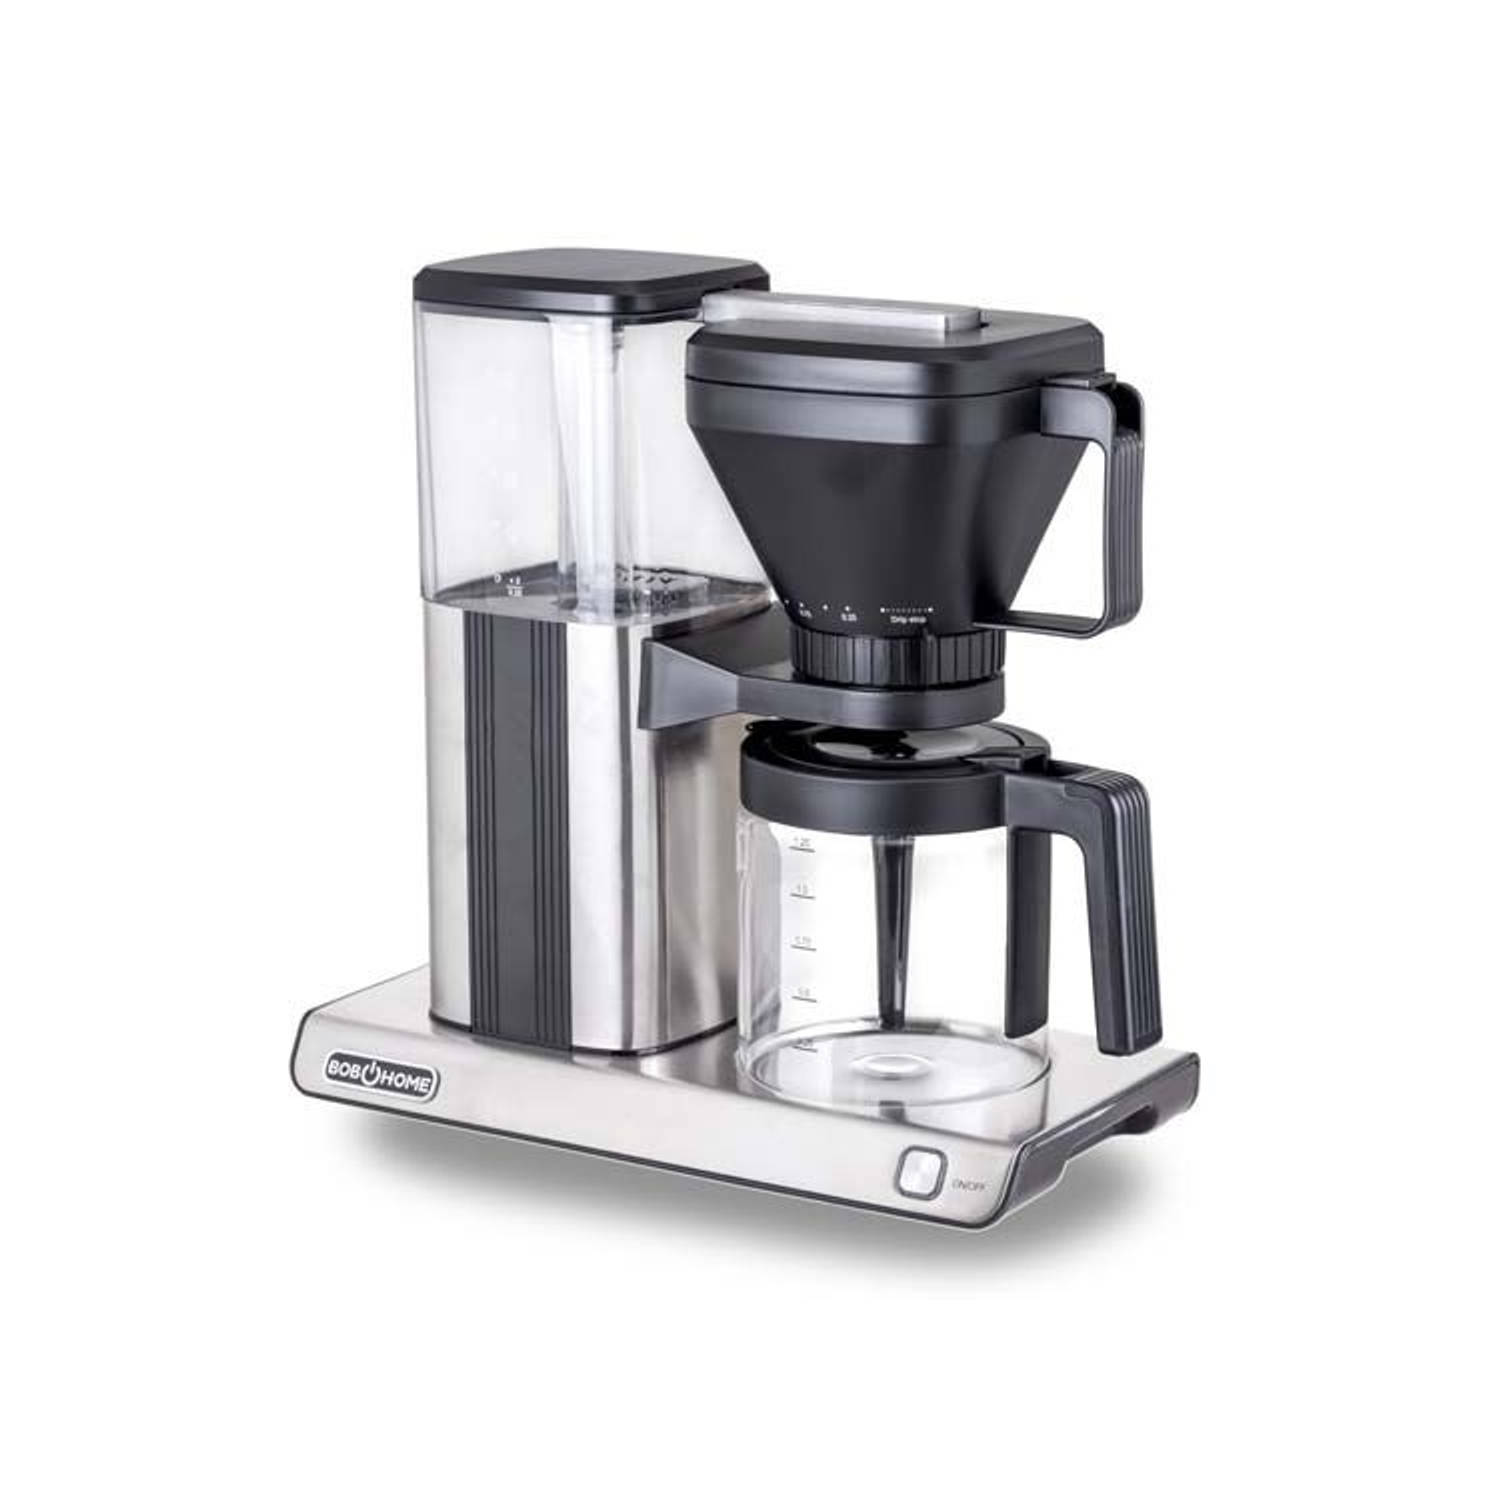 BOB Home Koffiezetapparaat Zwart/Zilver - Filterkoffie